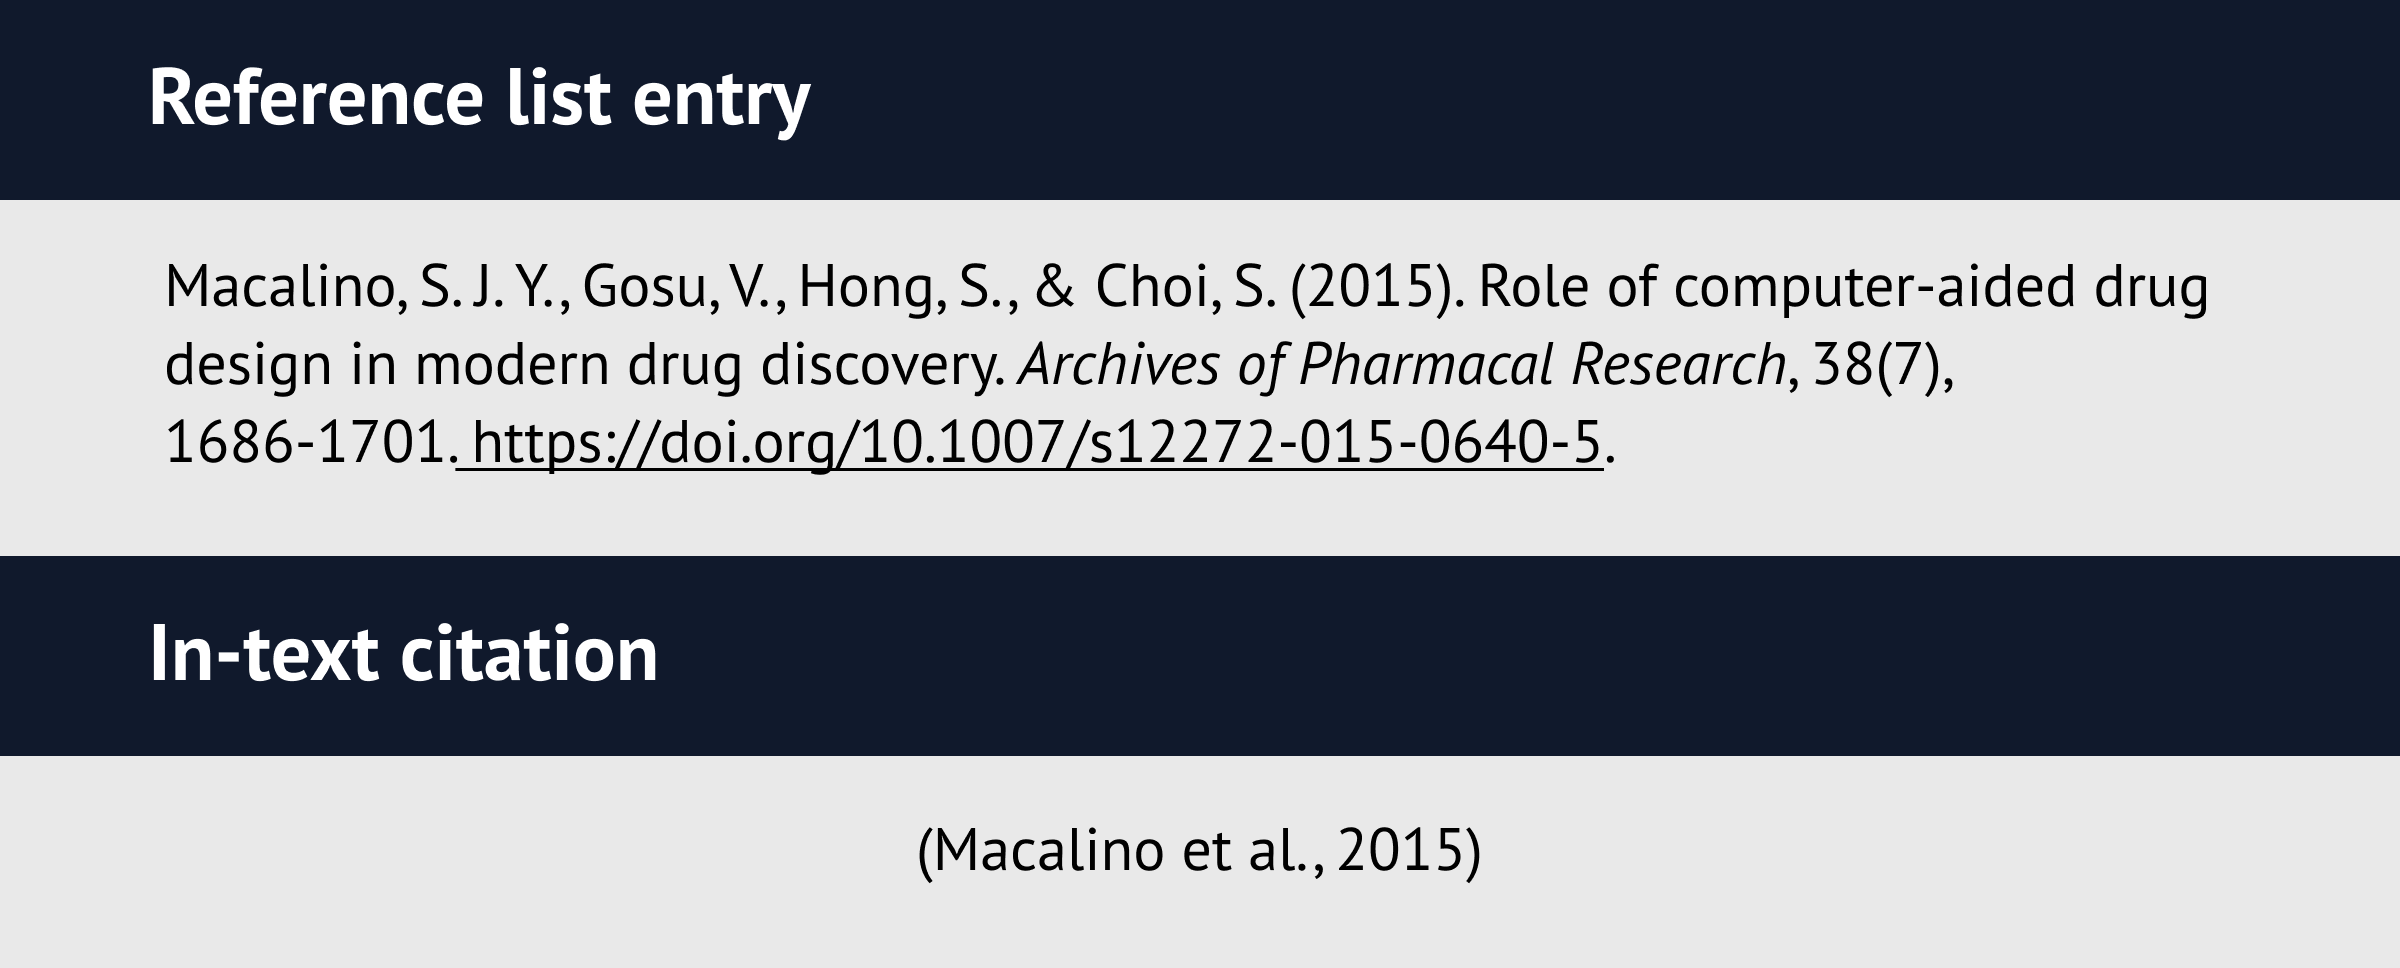 Scientific paper citation example in APA 